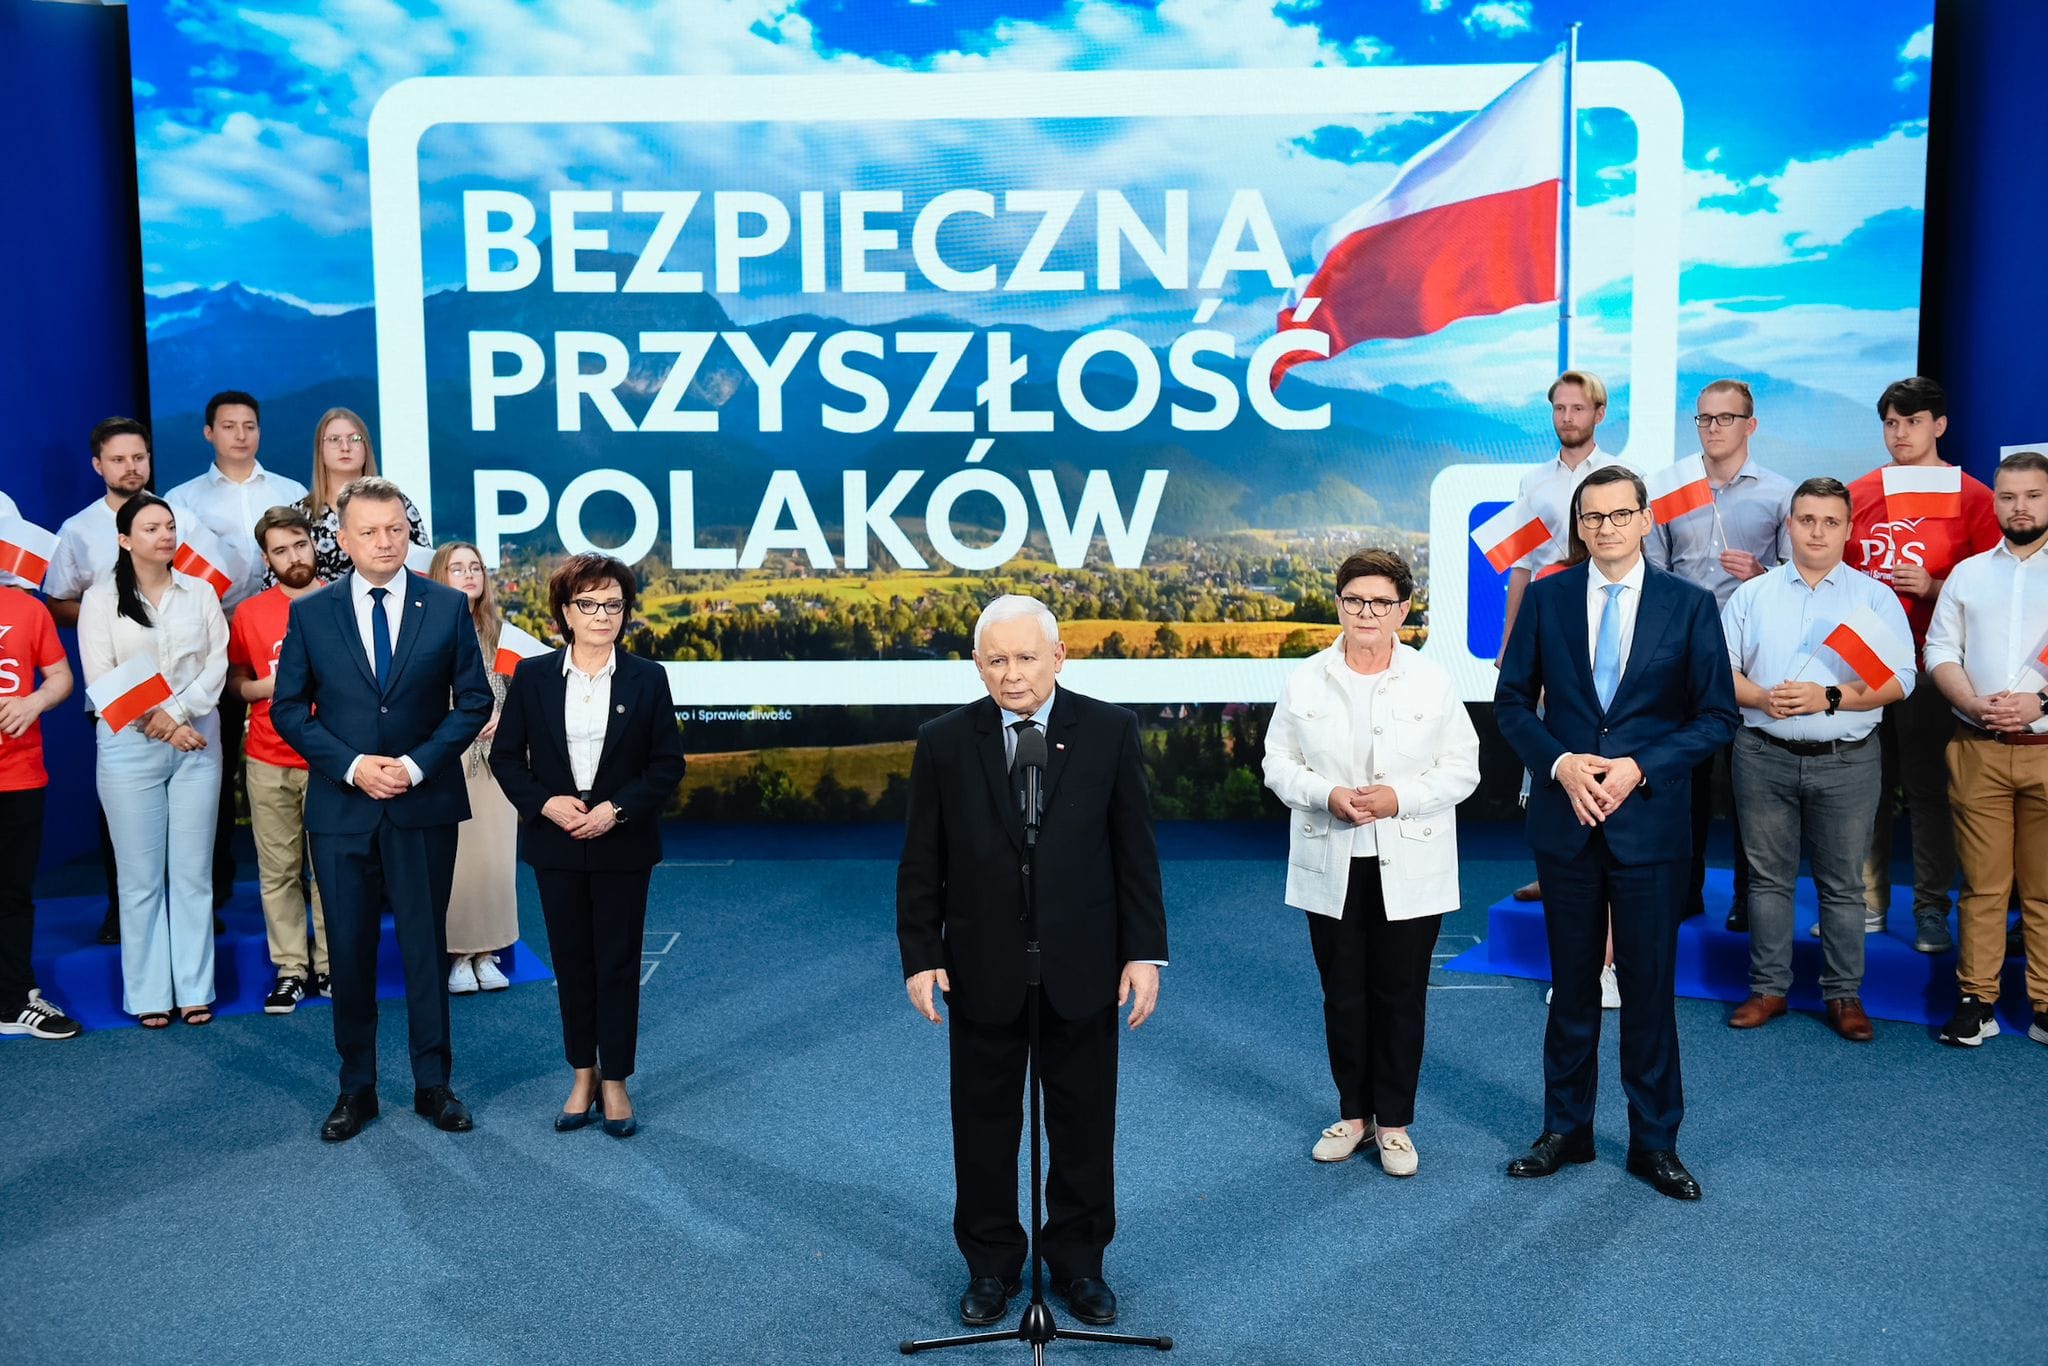 Premier Jarosław Kaczyński, prezes Prawo i Sprawiedliwość jasno - Jesteśmy formacją, która gwarantuje bezpieczną przyszłość Polaków. 15 października zwyciężymy.